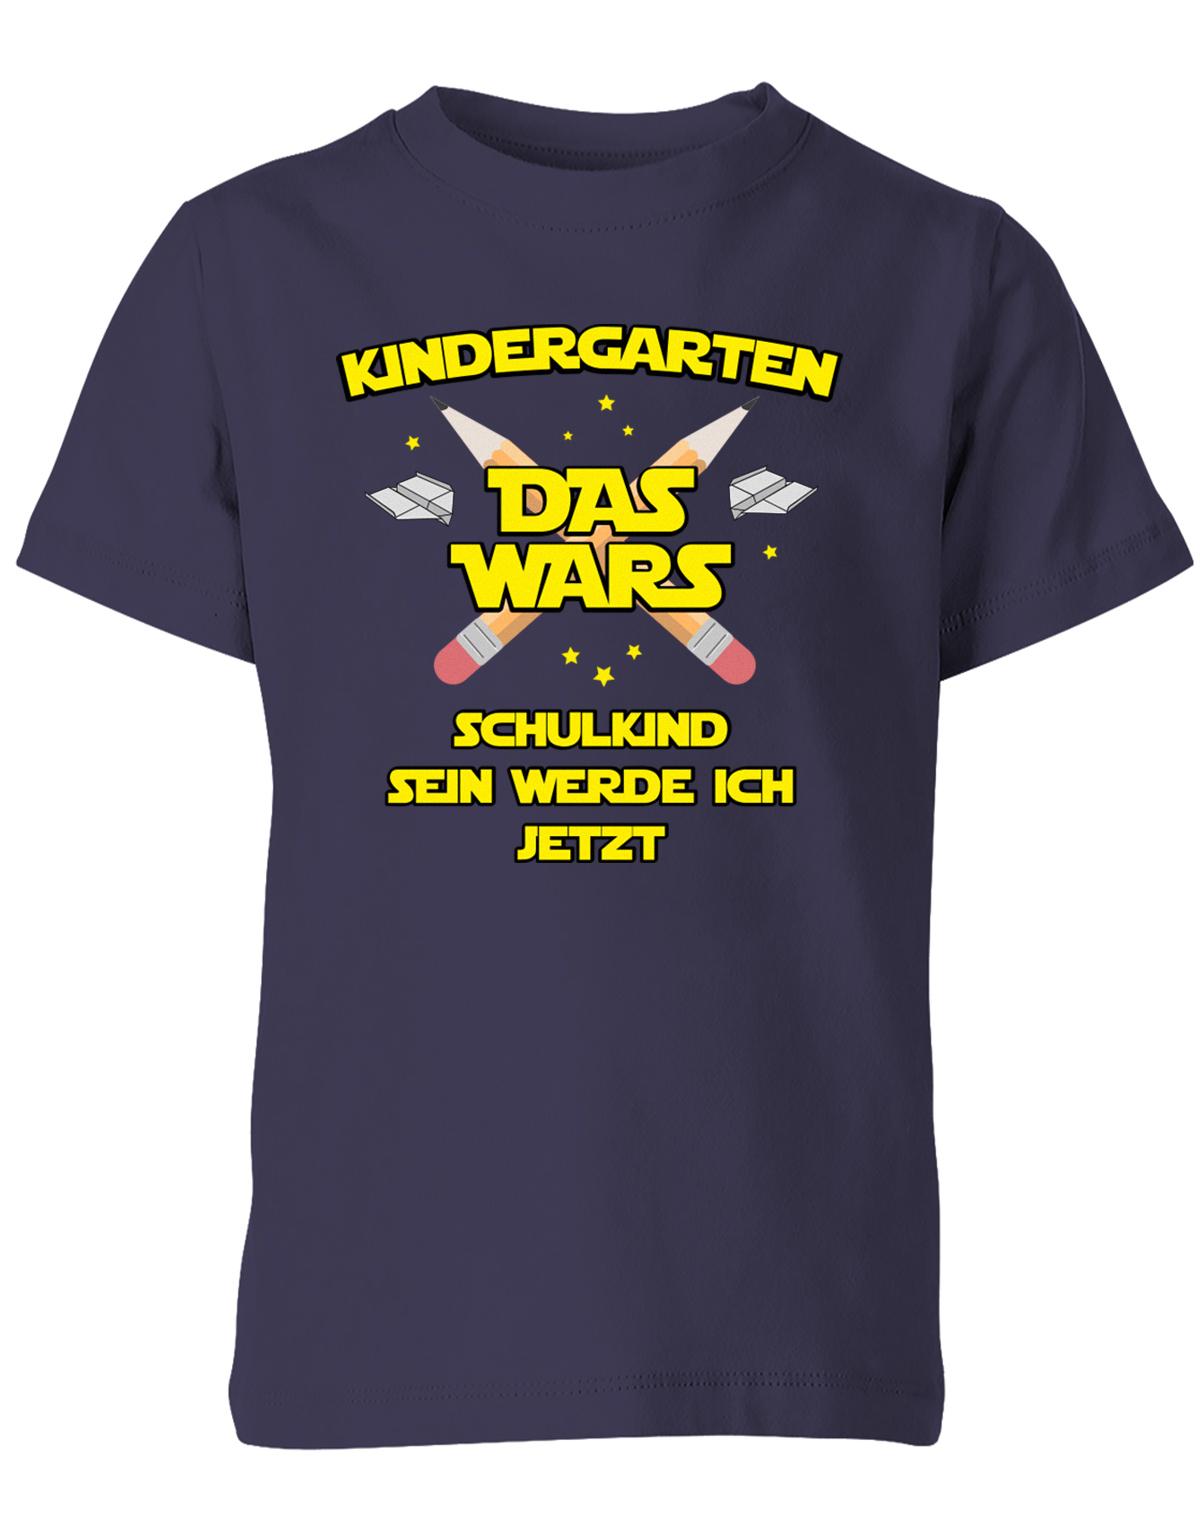 Kindergarten Das Wars Schulkind sein werde ich jetzt - Kita Abgänger Shirt Navy